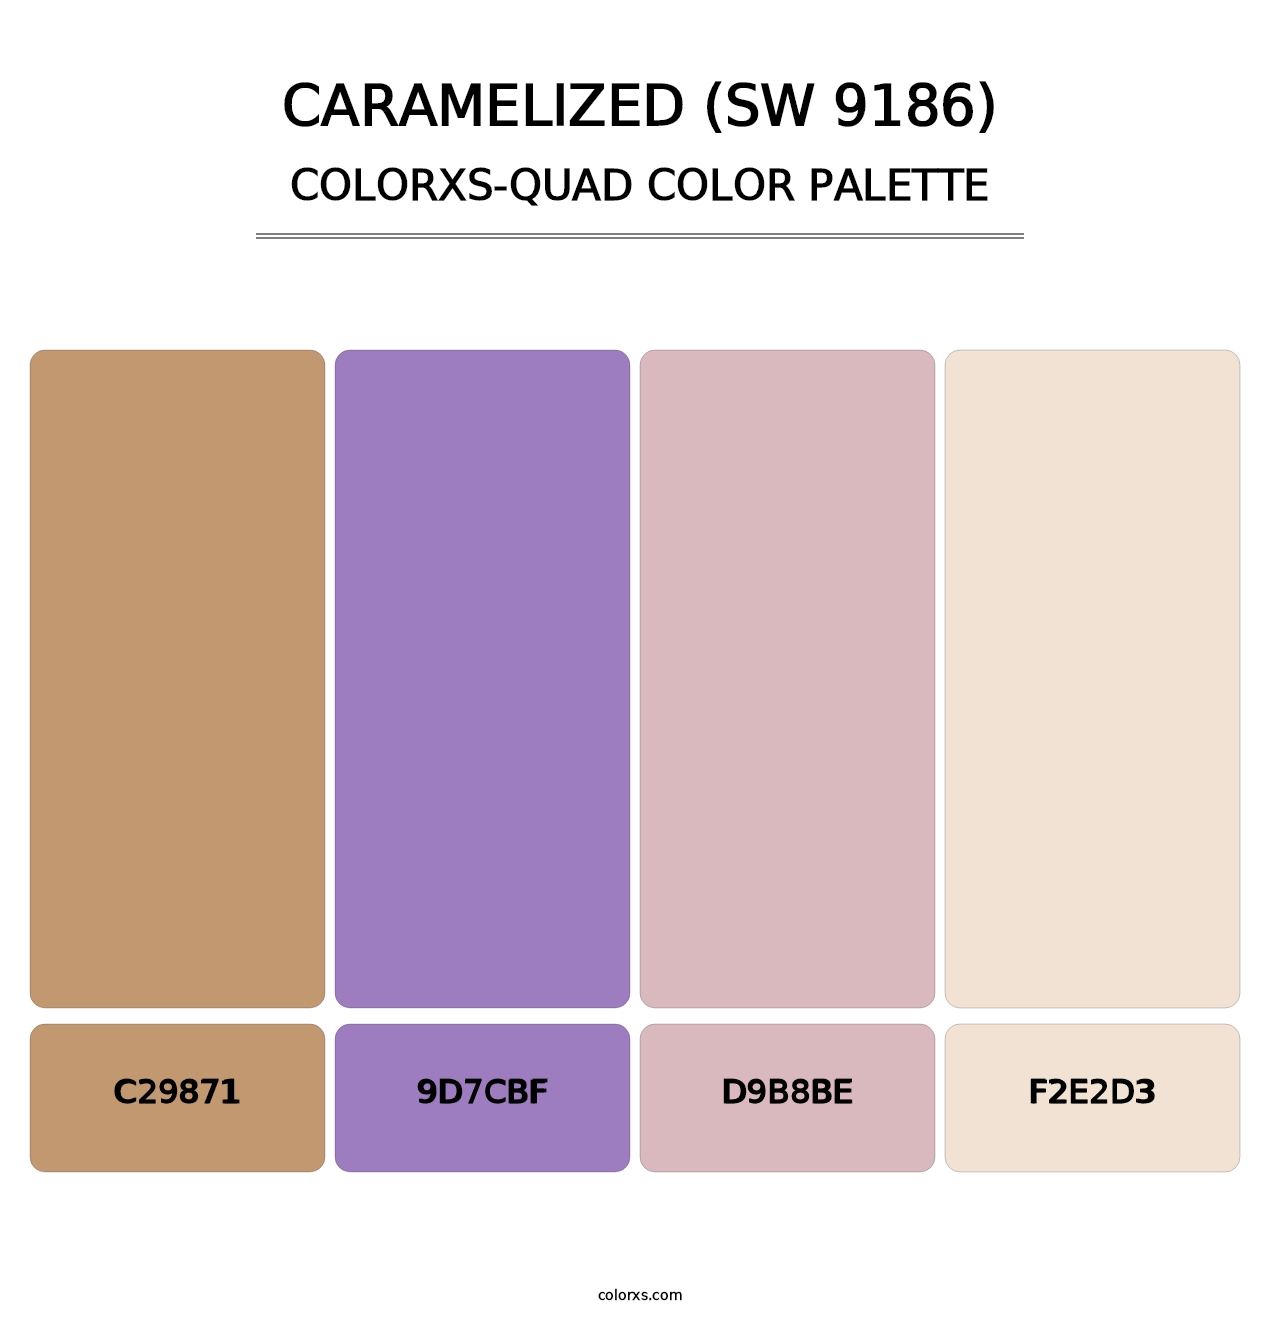 Caramelized (SW 9186) - Colorxs Quad Palette